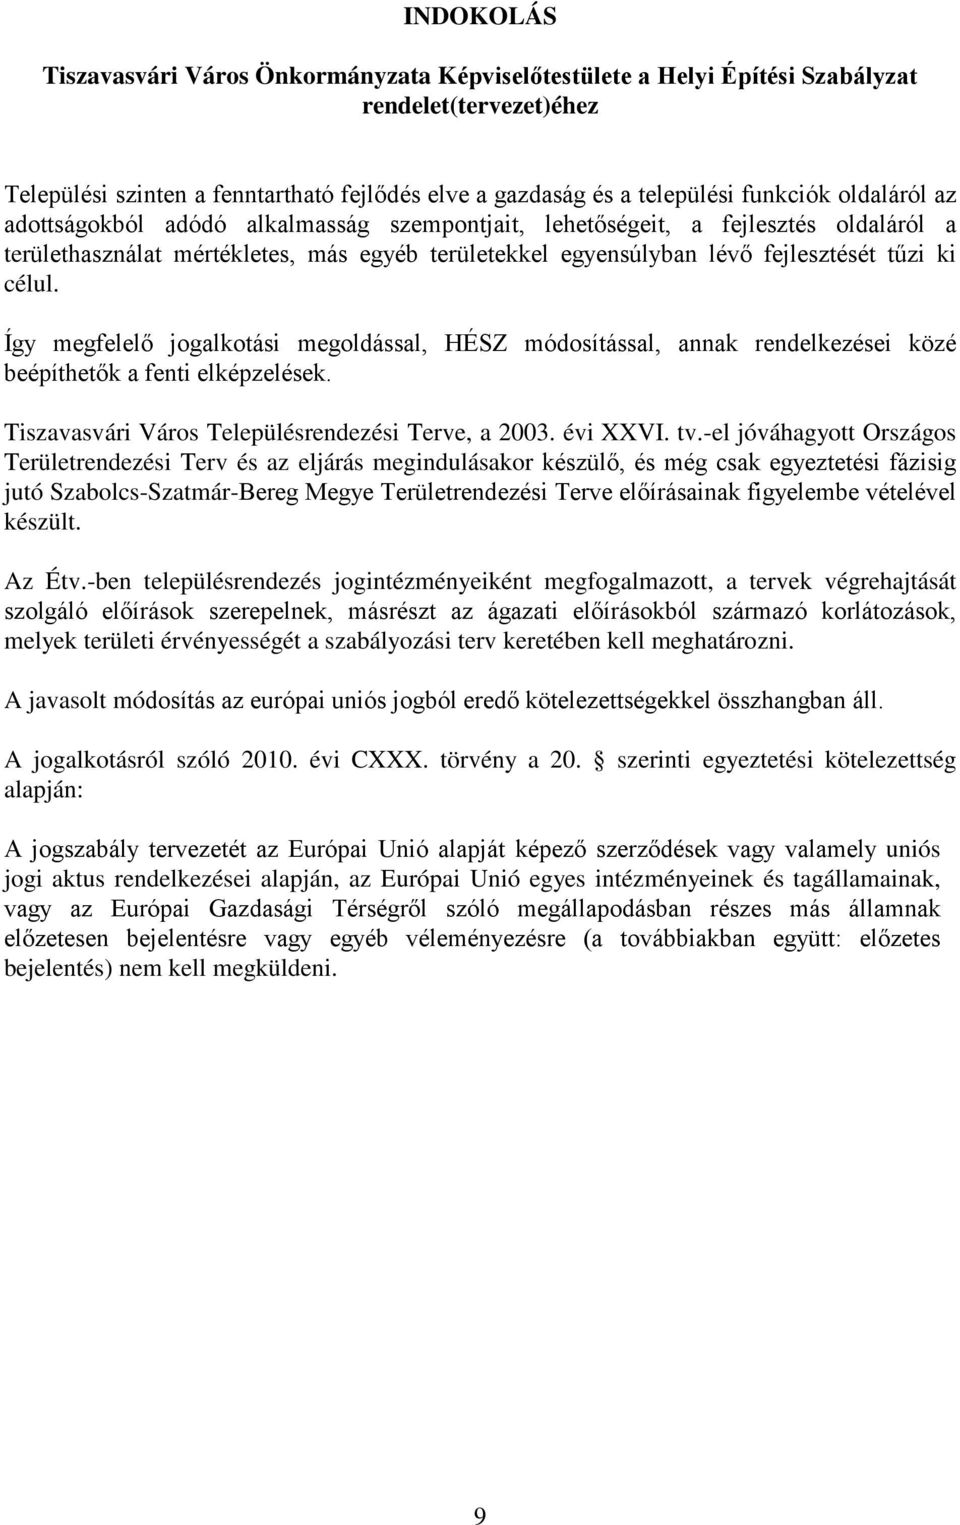 Így megfelelő jogalkotási megoldással, HÉSZ módosítással, annak rendelkezései közé beépíthetők a fenti elképzelések. Tiszavasvári Város Településrendezési Terve, a 2003. évi XXVI. tv.